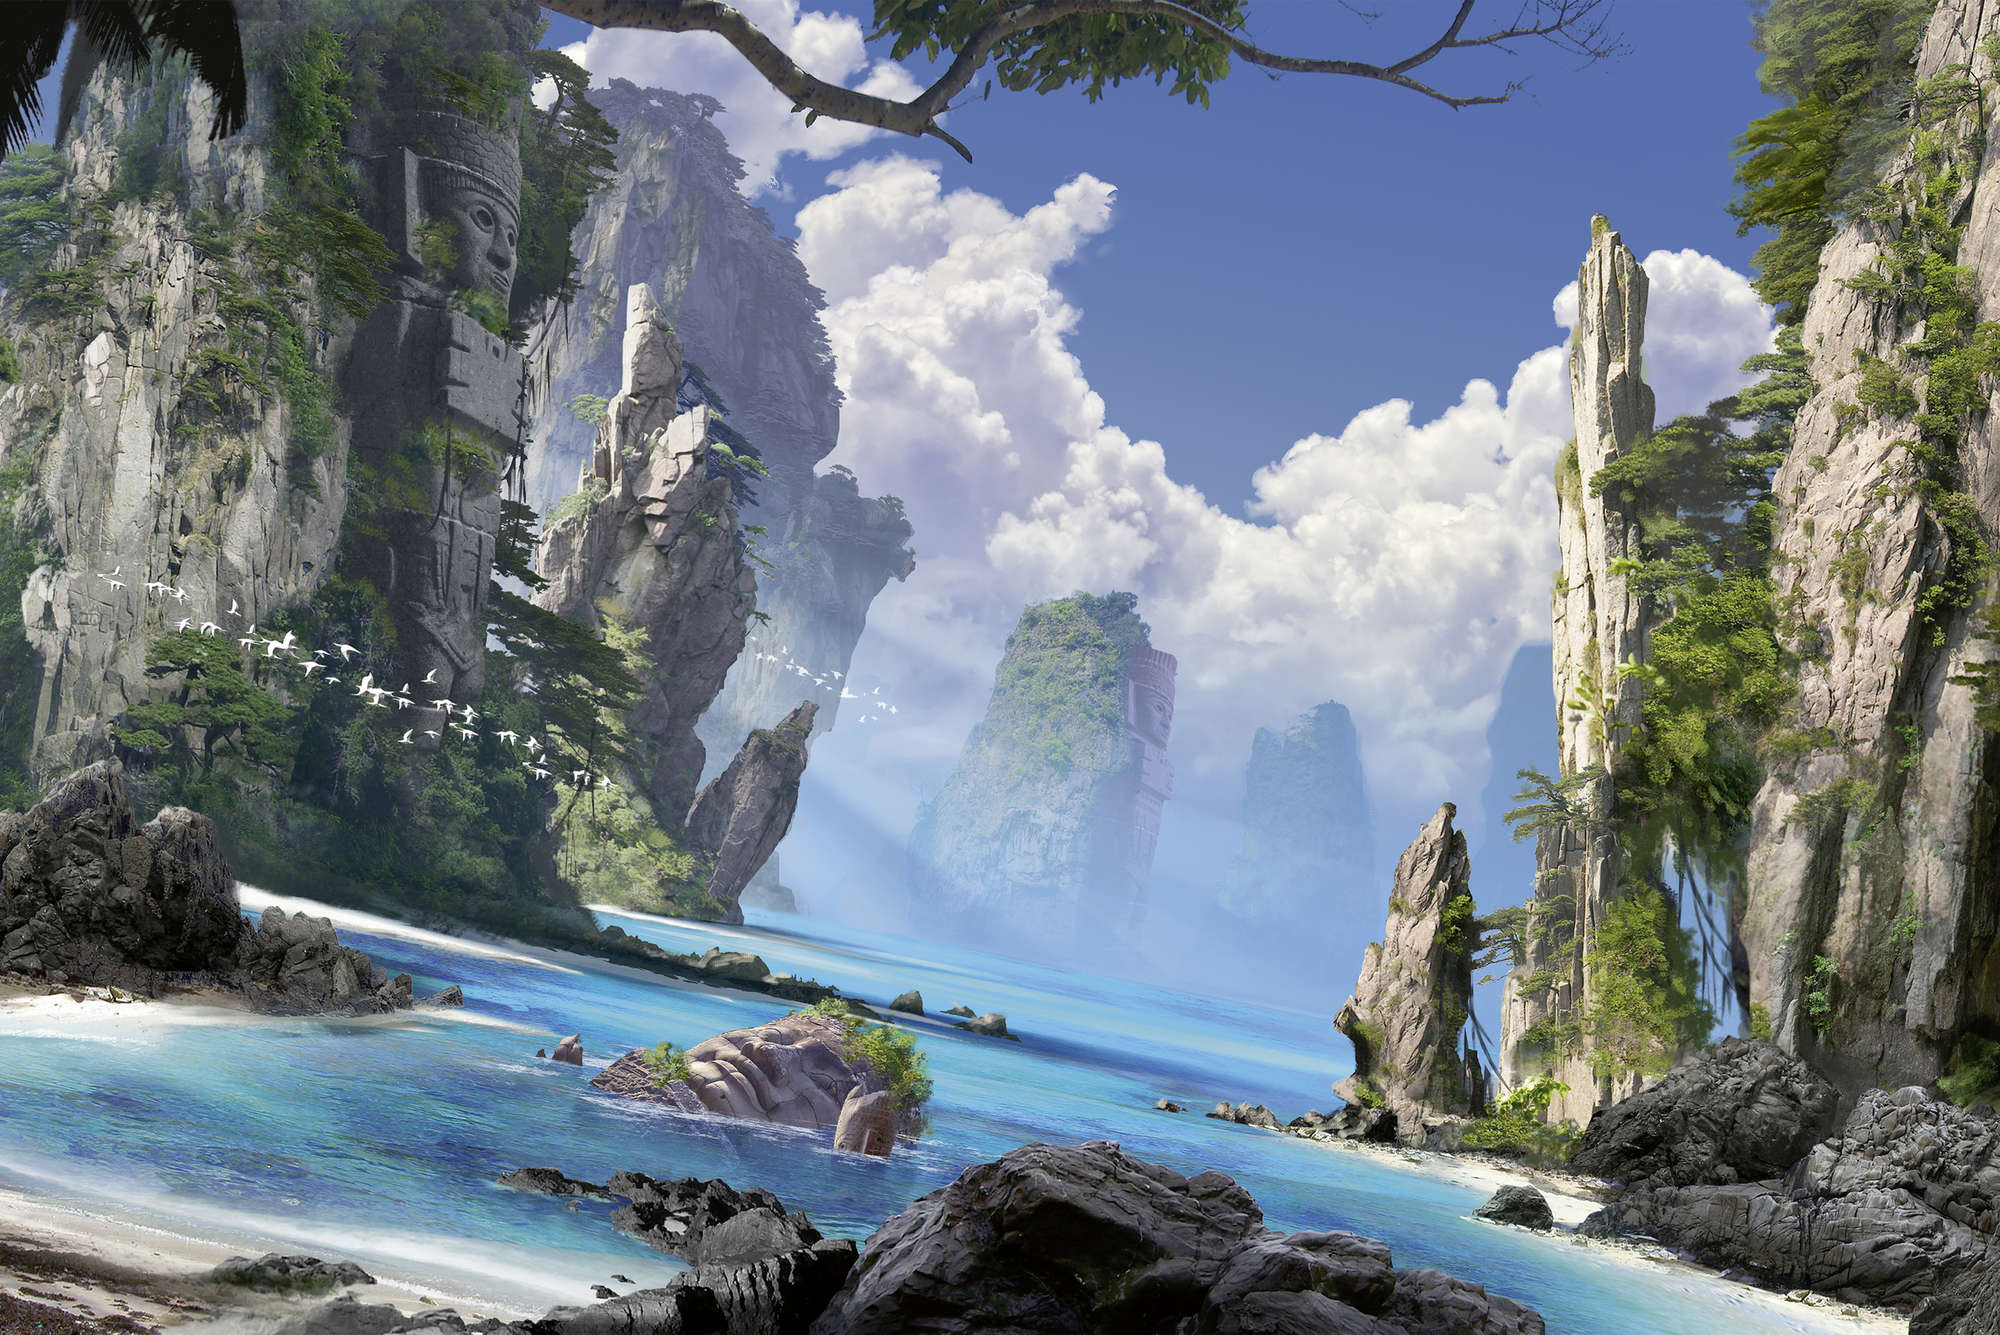             Papel pintable Mundo de fantasía con bahía y acantilados - tejido no tejido liso mate
        